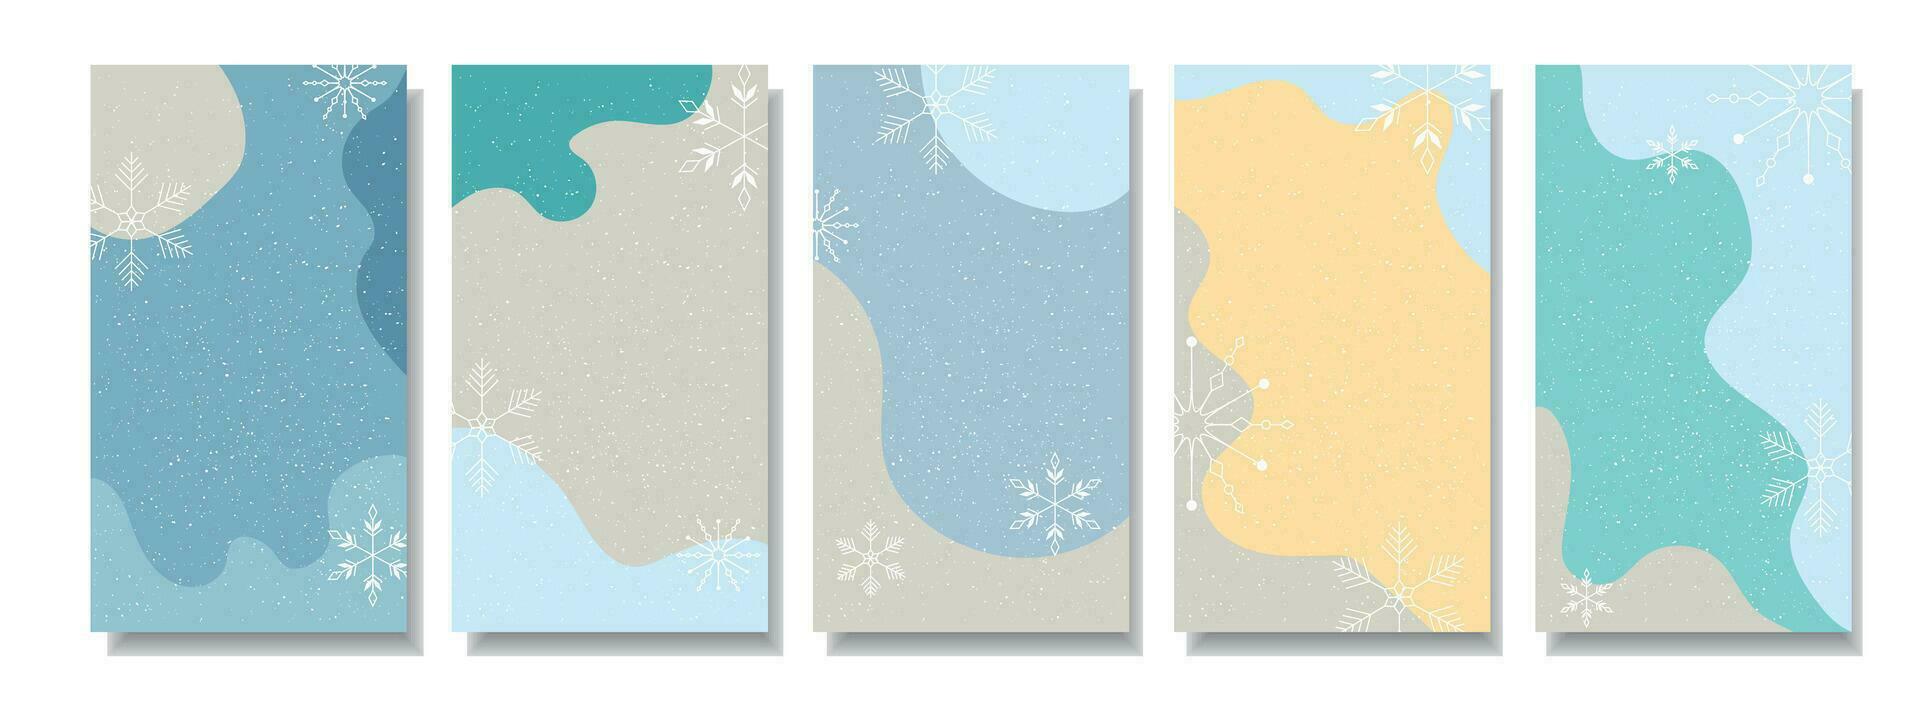 historia av vinter- snöflingor och posta design. vinter- flygblad med abstrakt former. vektor